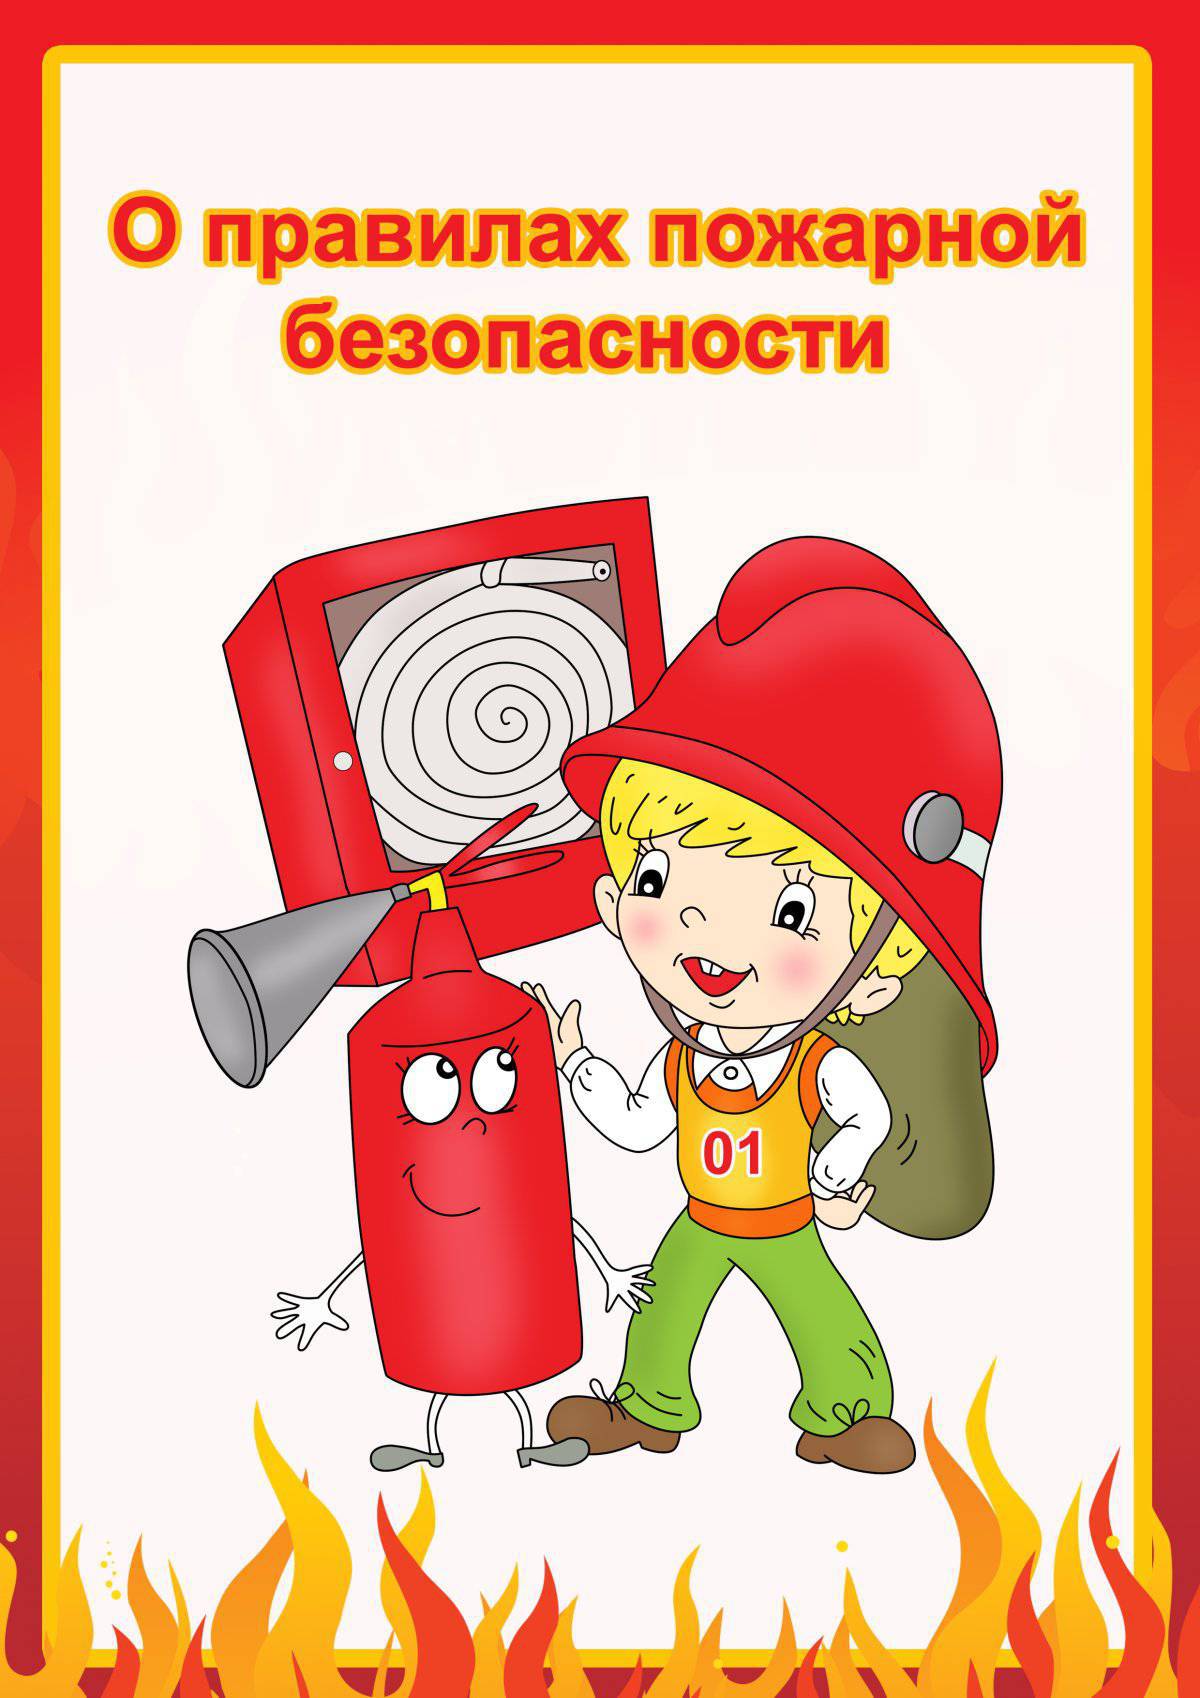 Для детей противопожарная безопасность #31